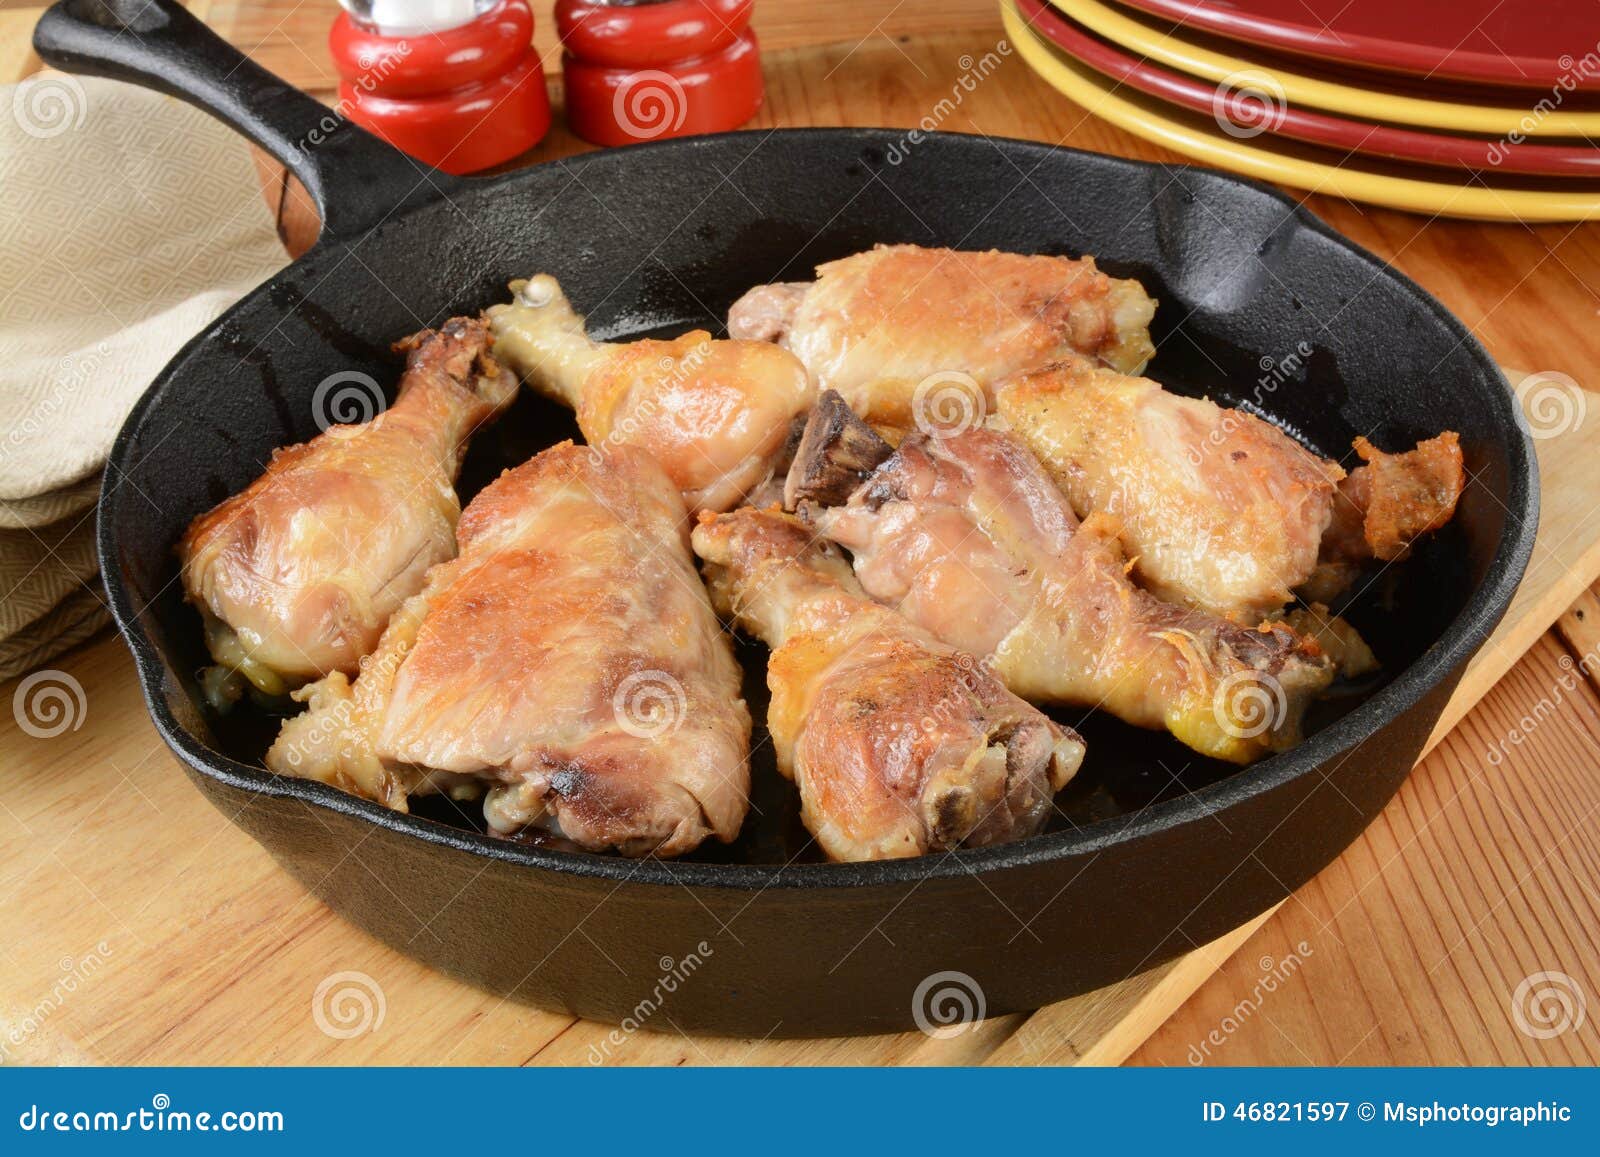 Золотистая курица на сковороде. Курица на сковороде. Сковородка с курицей. Сырая курица на сковороде. Обжариваем куриные бёдрышки до золотистого цвета.